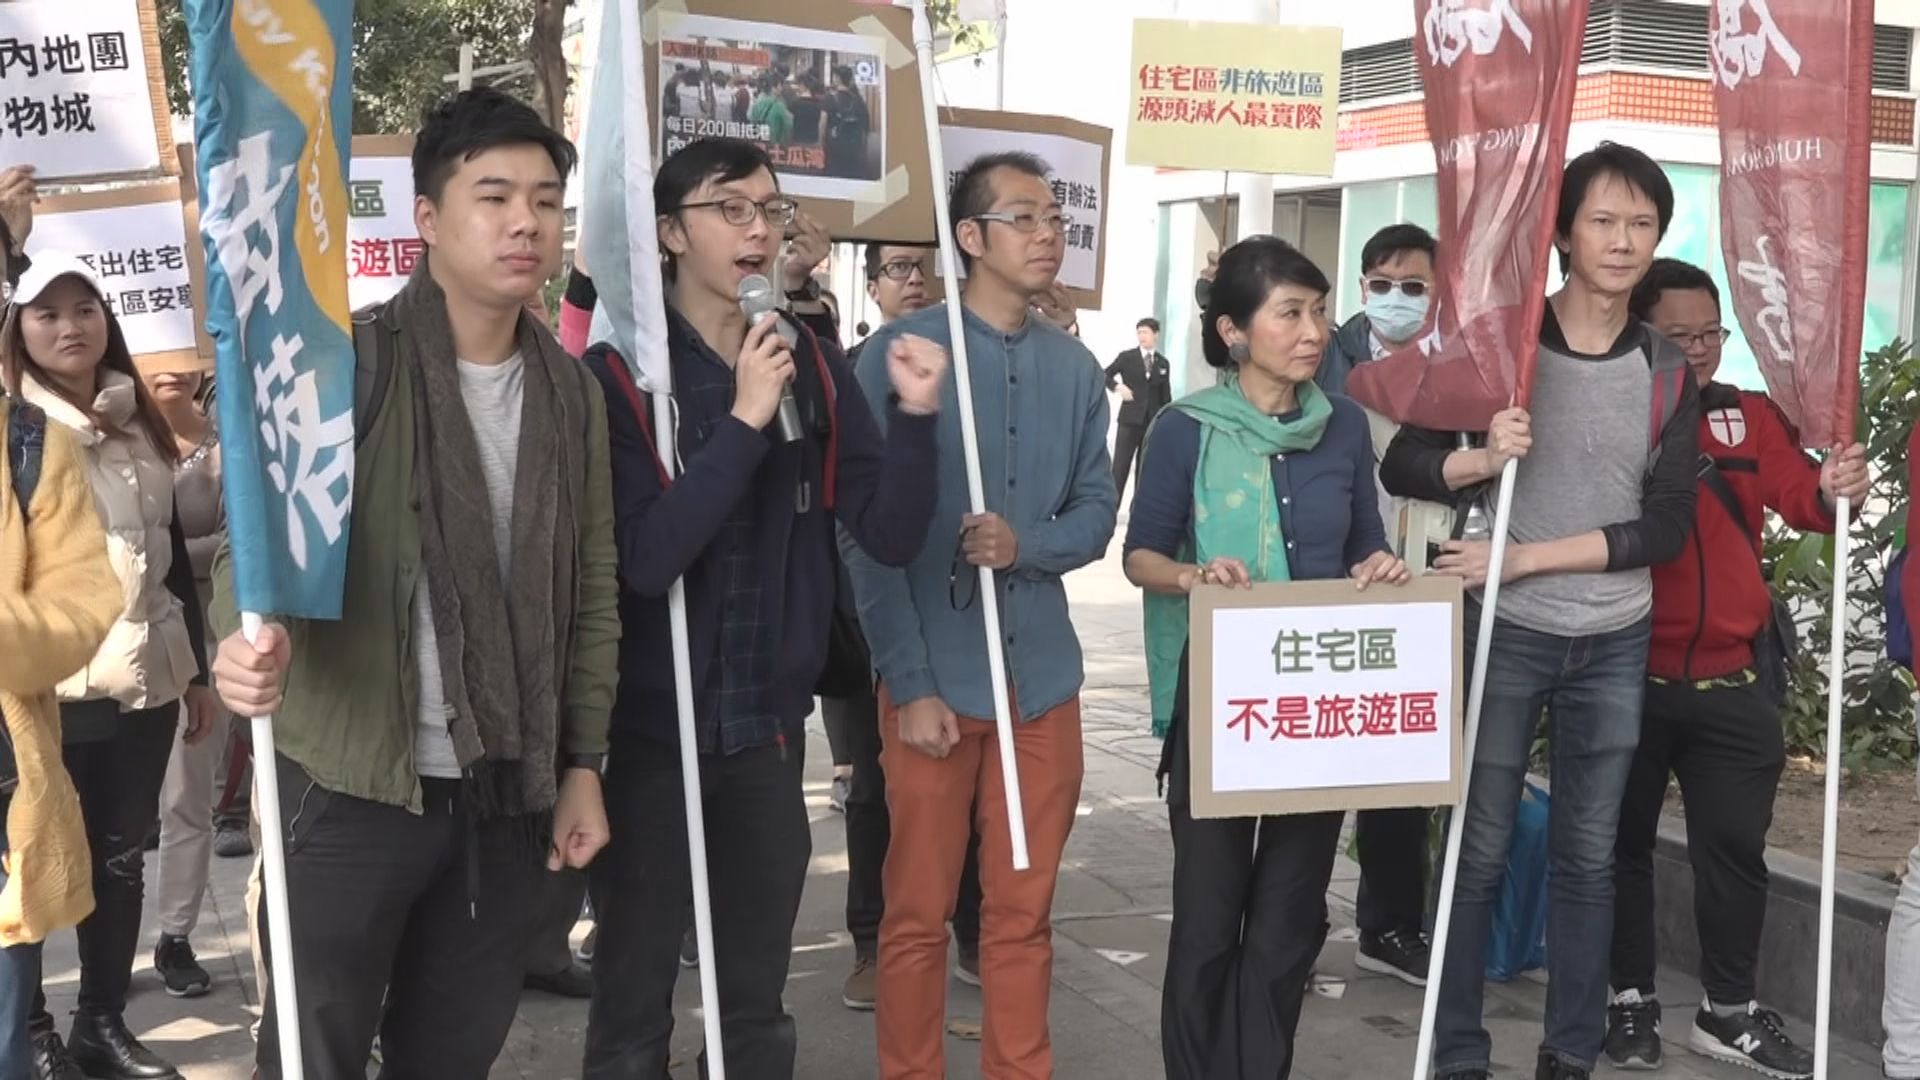 有團體抗議遊客影響九龍城居民生活